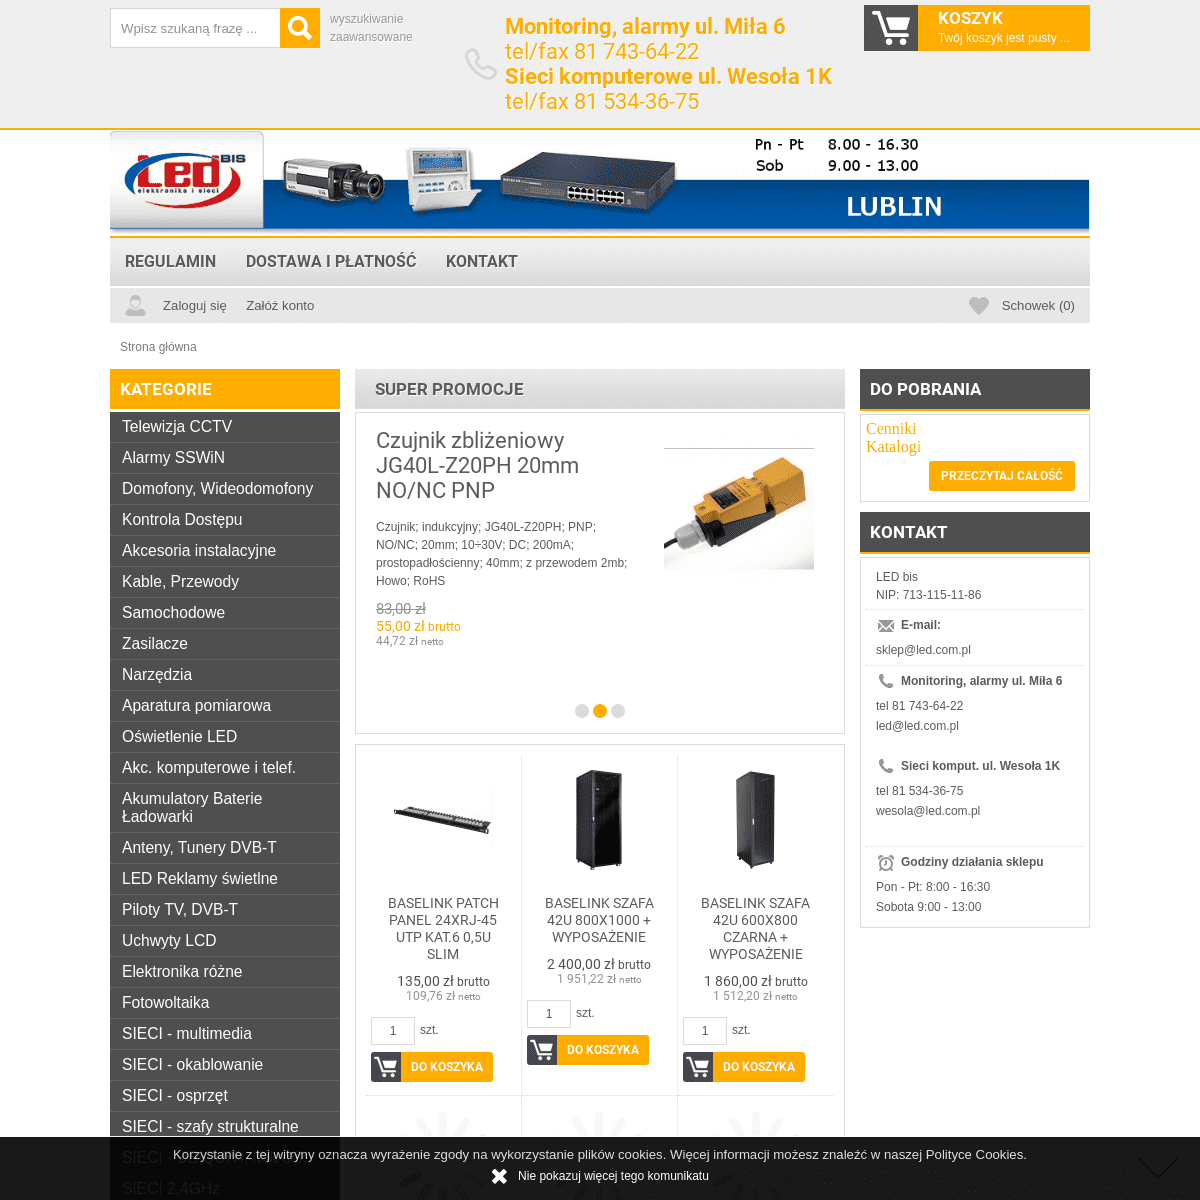 A complete backup of led.com.pl